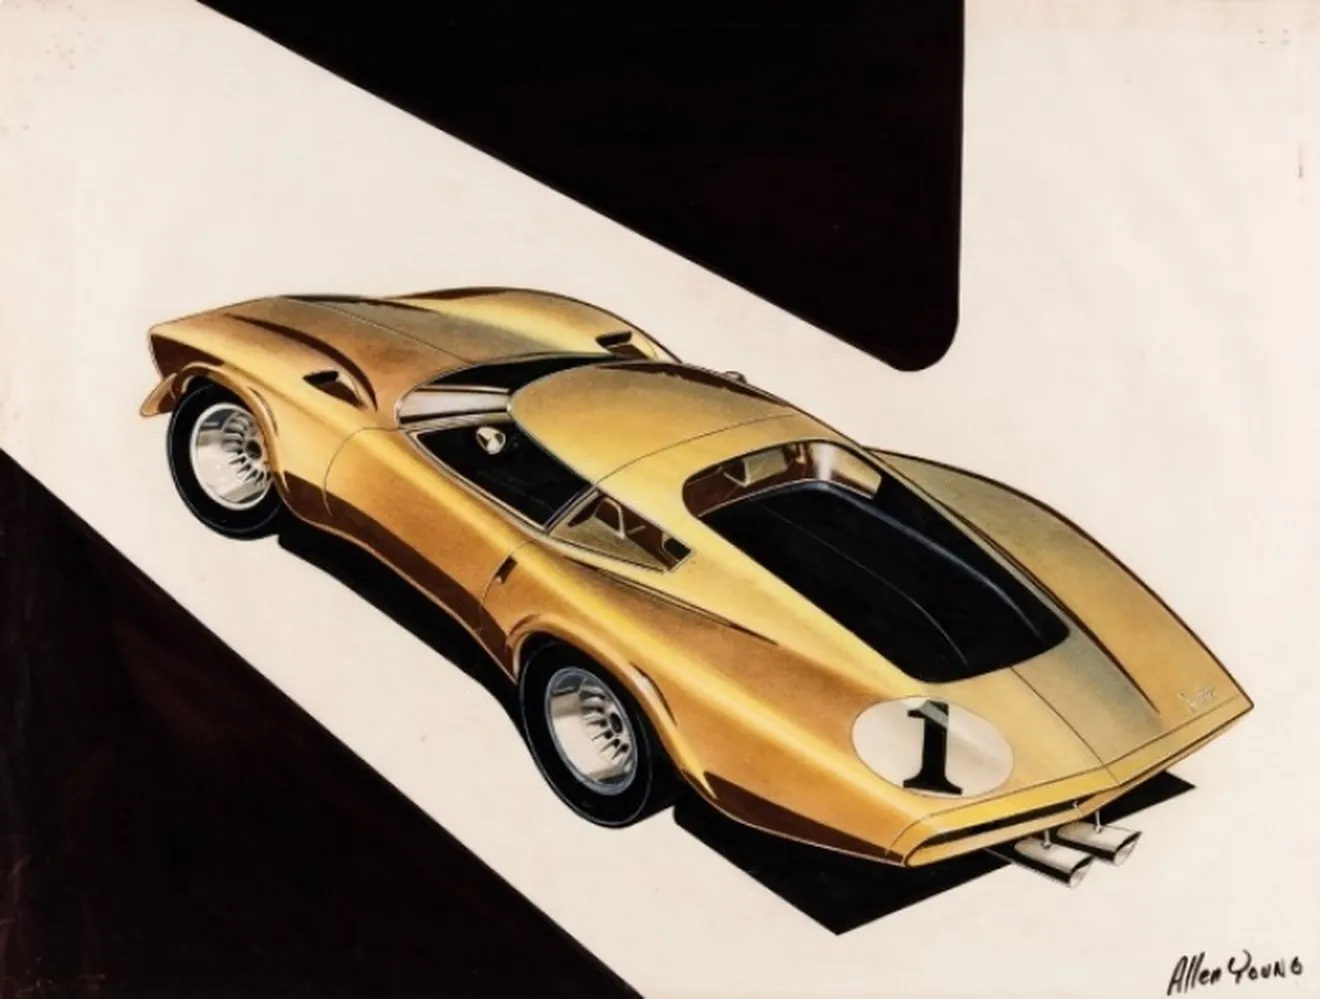 Exposición: La historia y evolución del Corvette a través de sus bocetos y anuncios